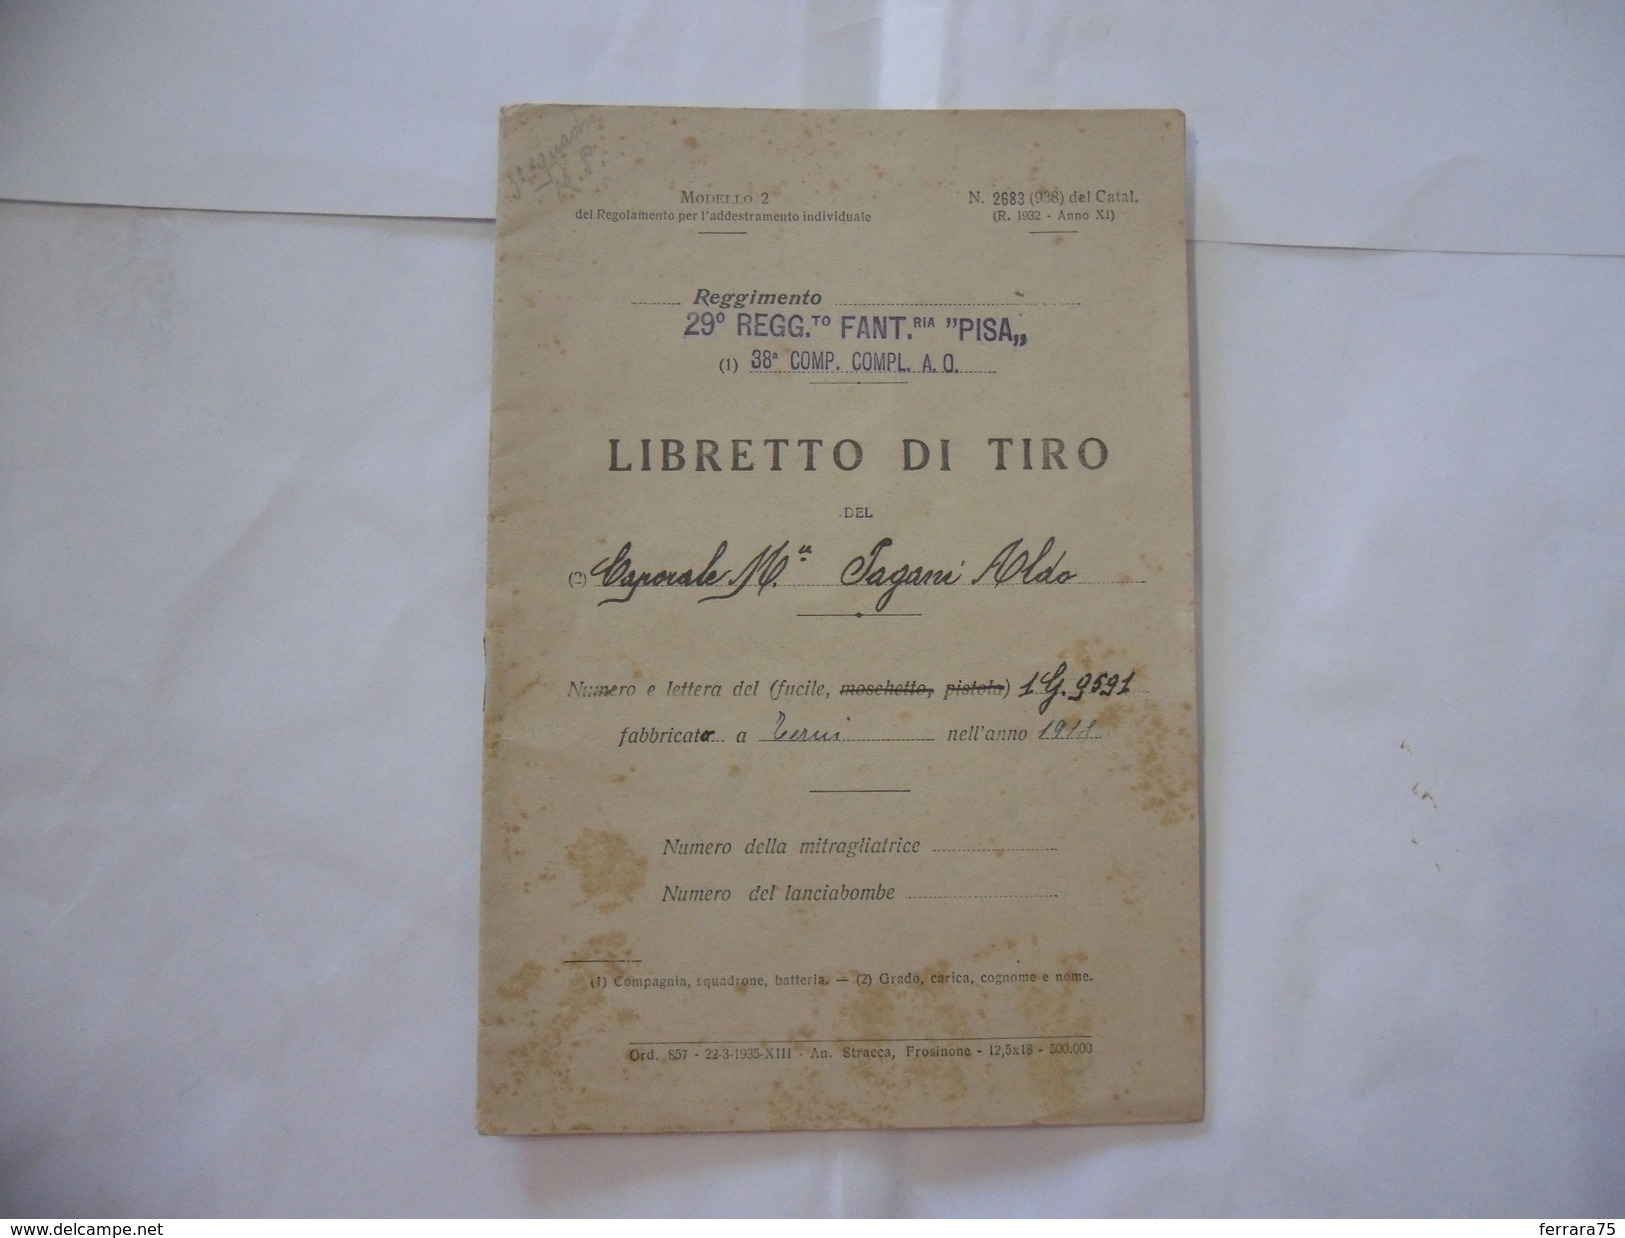 WW2 LIBRETTO DI TIRO 29°REGGIMENTO FANTERIA PISA FRONTE DEL PIAVE A.O. 1936. - Italienisch